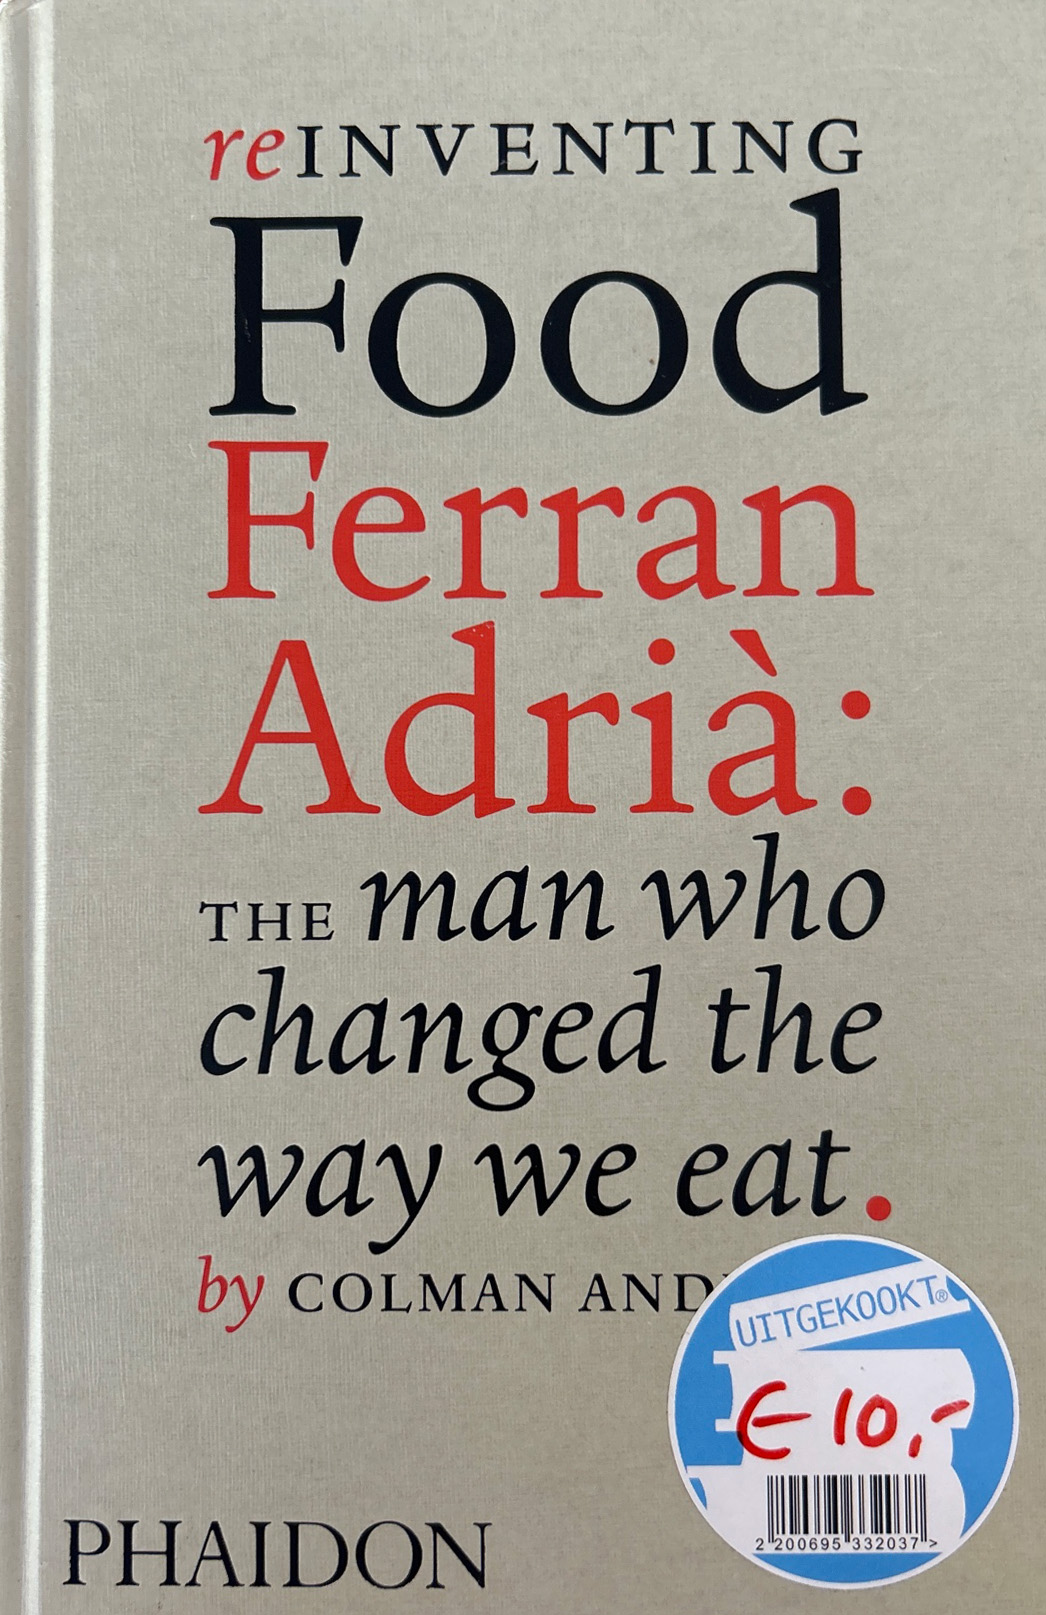 Reinventing Food – Ferran Adria